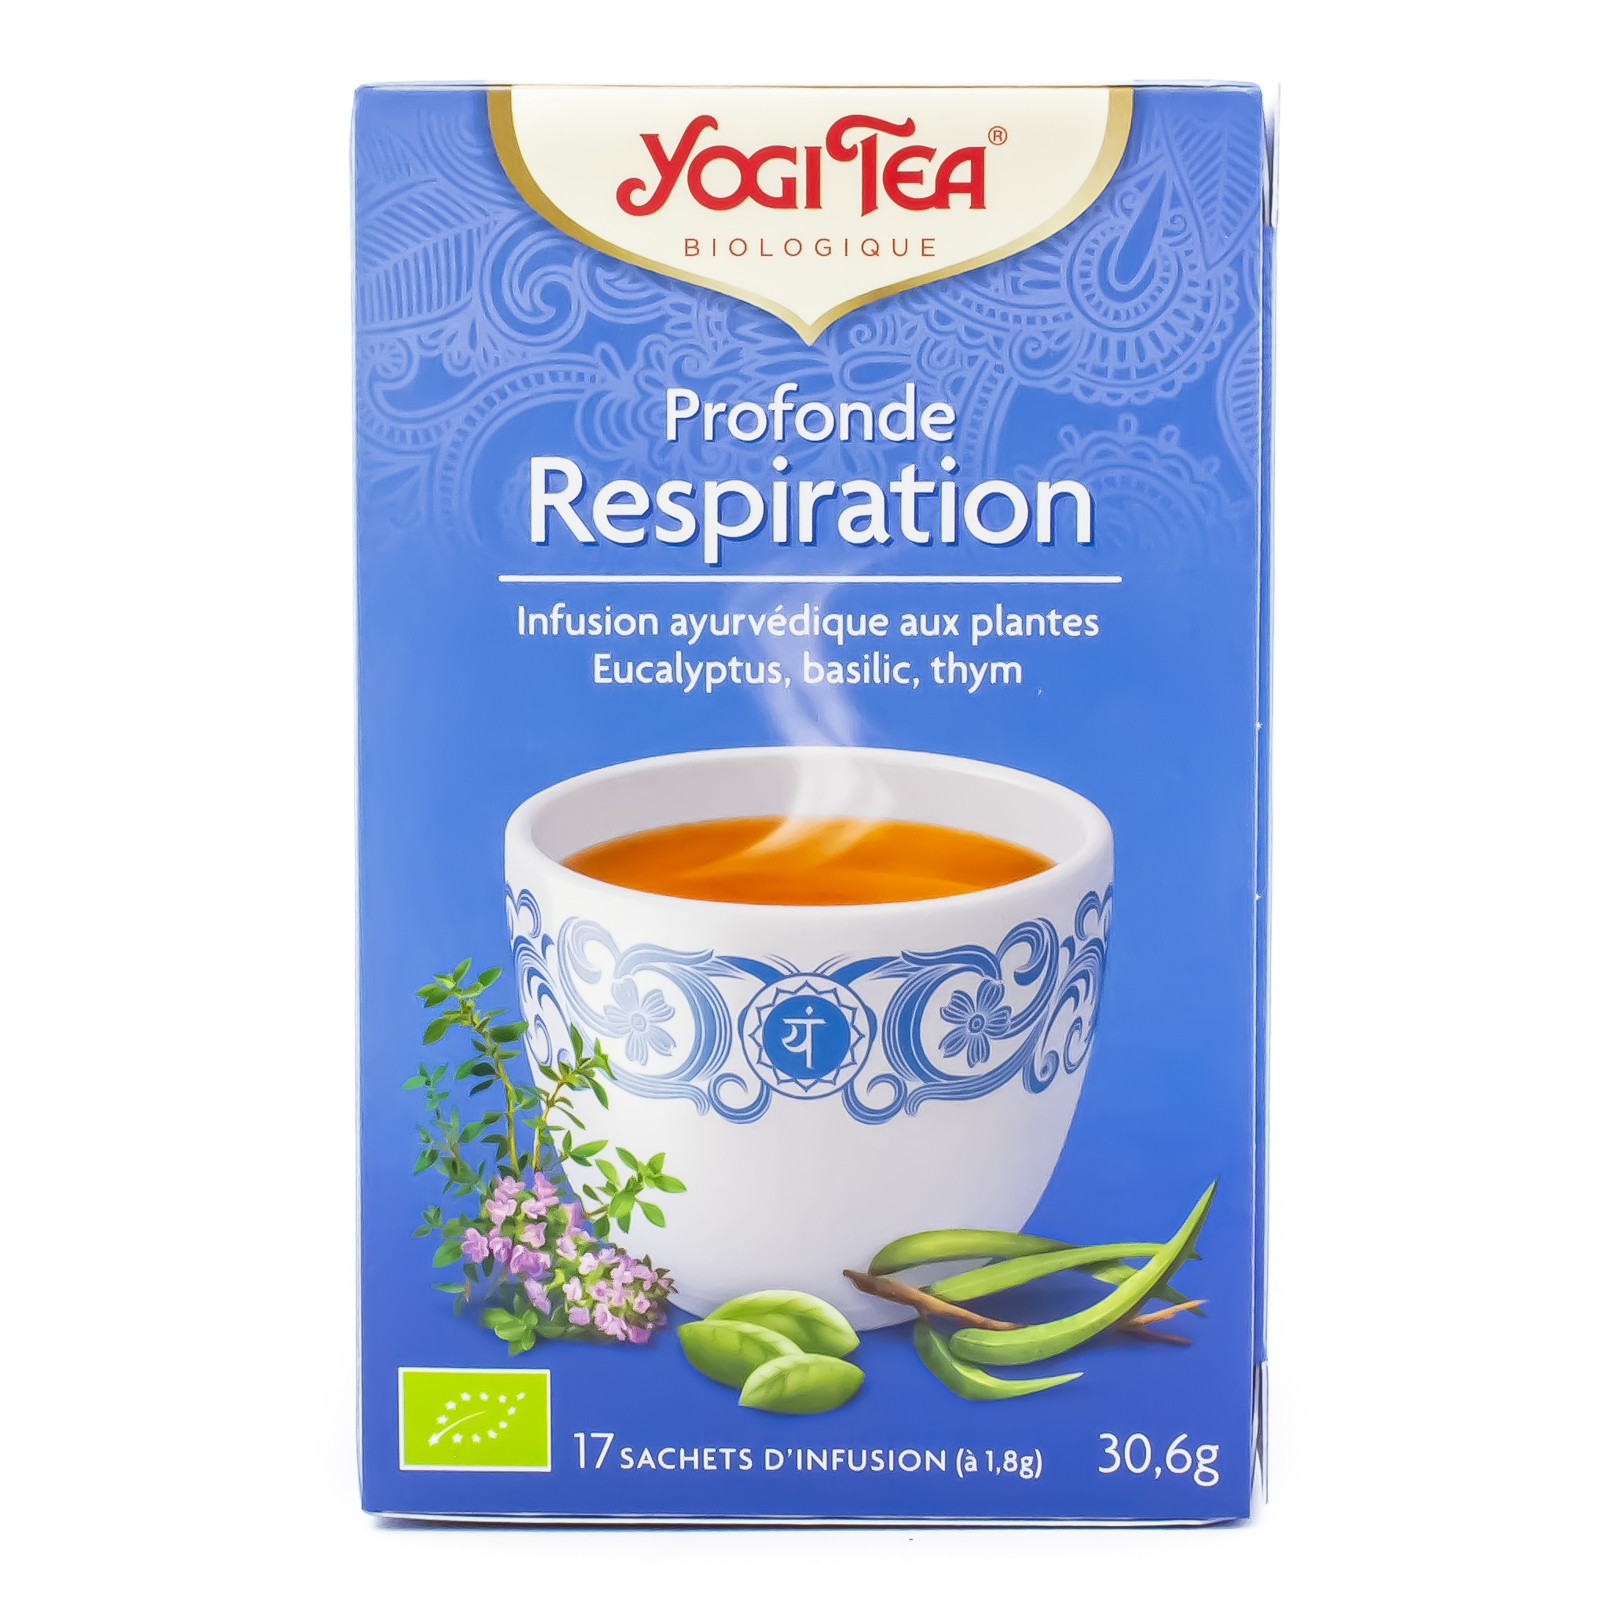 Yogi Tea Profonde Respiration infusion bio 17 sachets